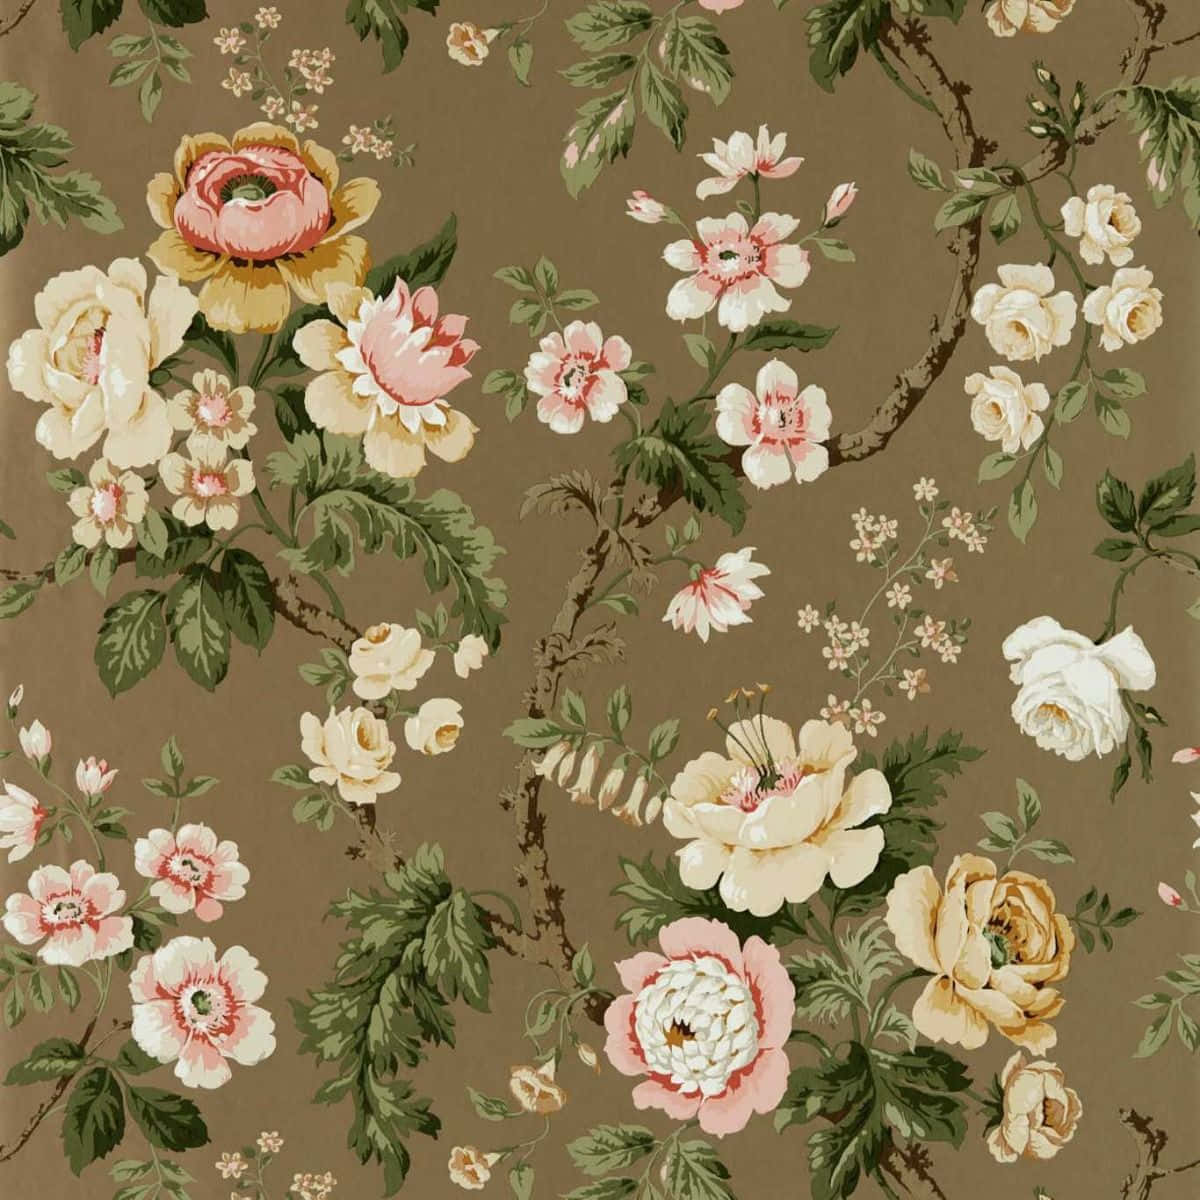 Vintage Floral Pattern Brown Background Wallpaper